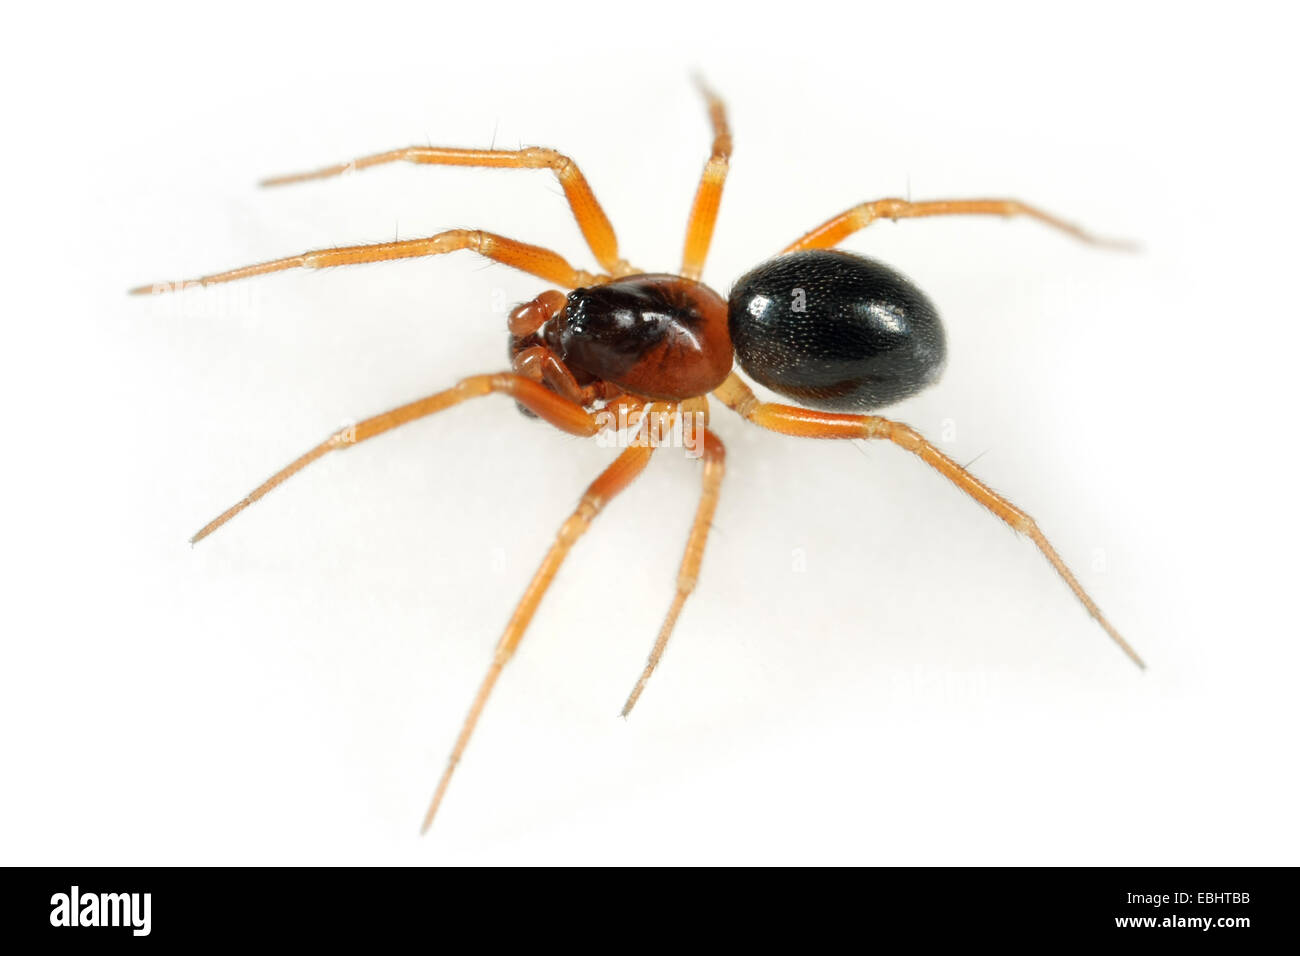 Ein männlicher Zwerg Spinne (Gongylidium rufipes) auf weißem Hintergrund. Zwerg Spinnen sind Teil der Familie Linyphiidae. Stockfoto